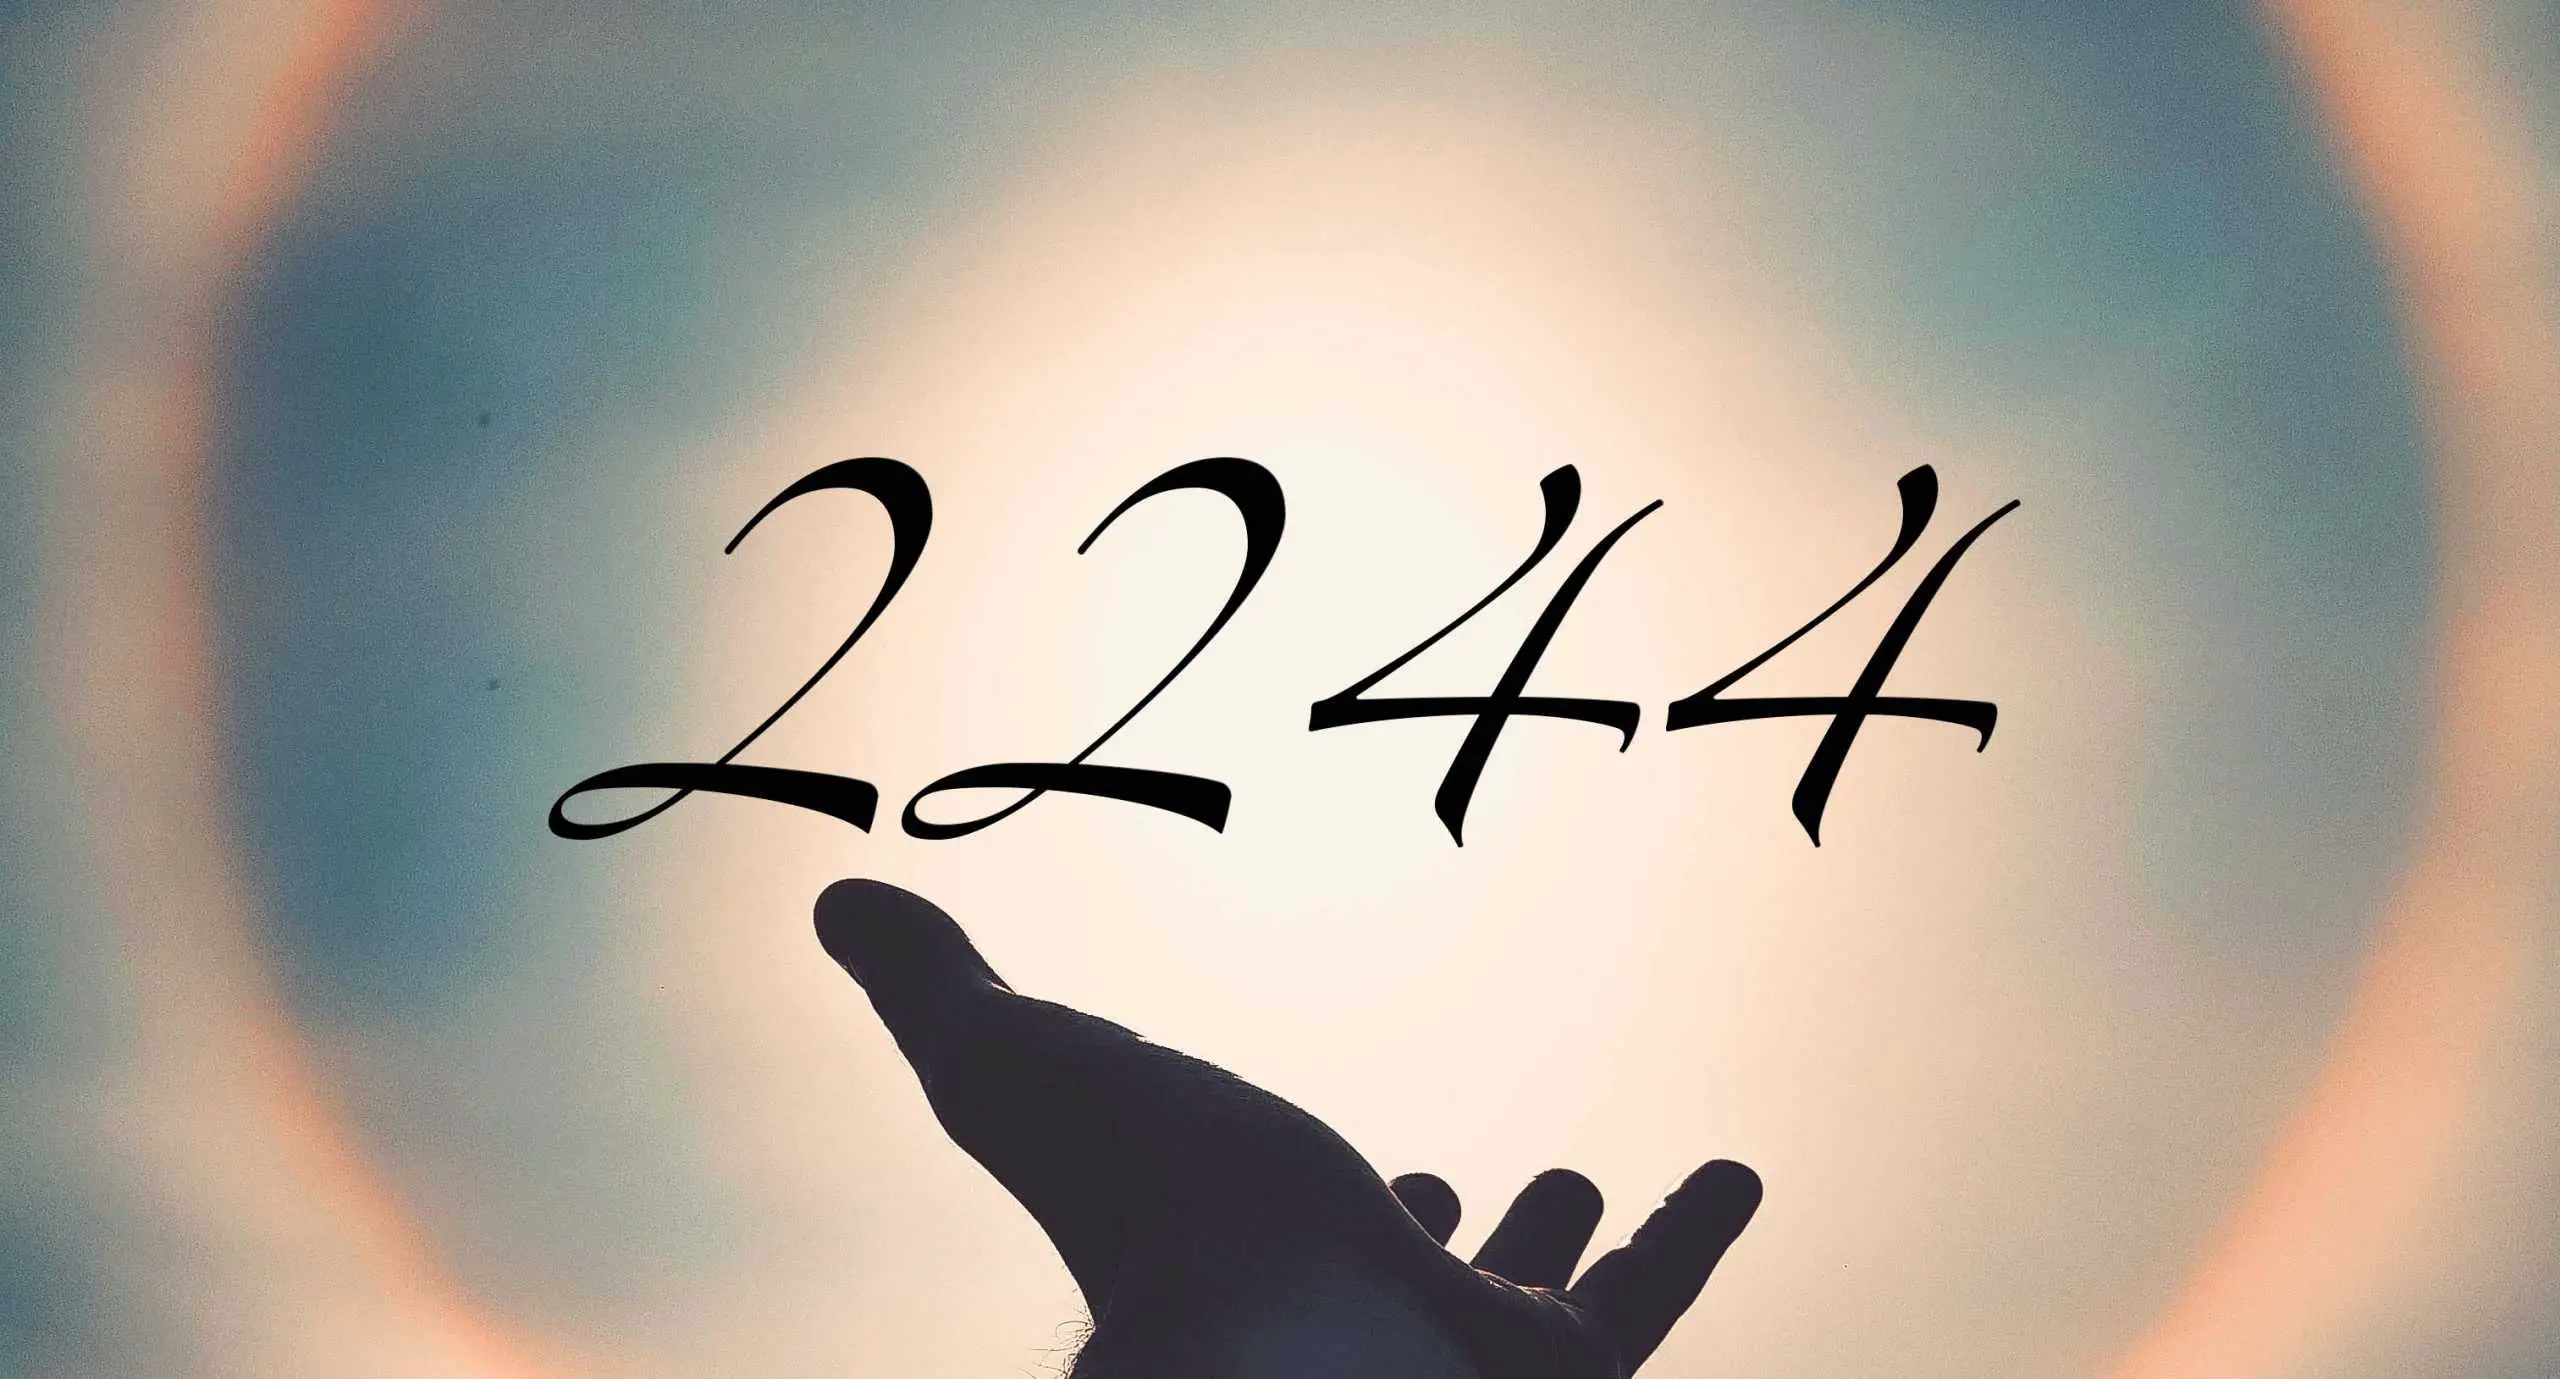 Signification du nombre 2244